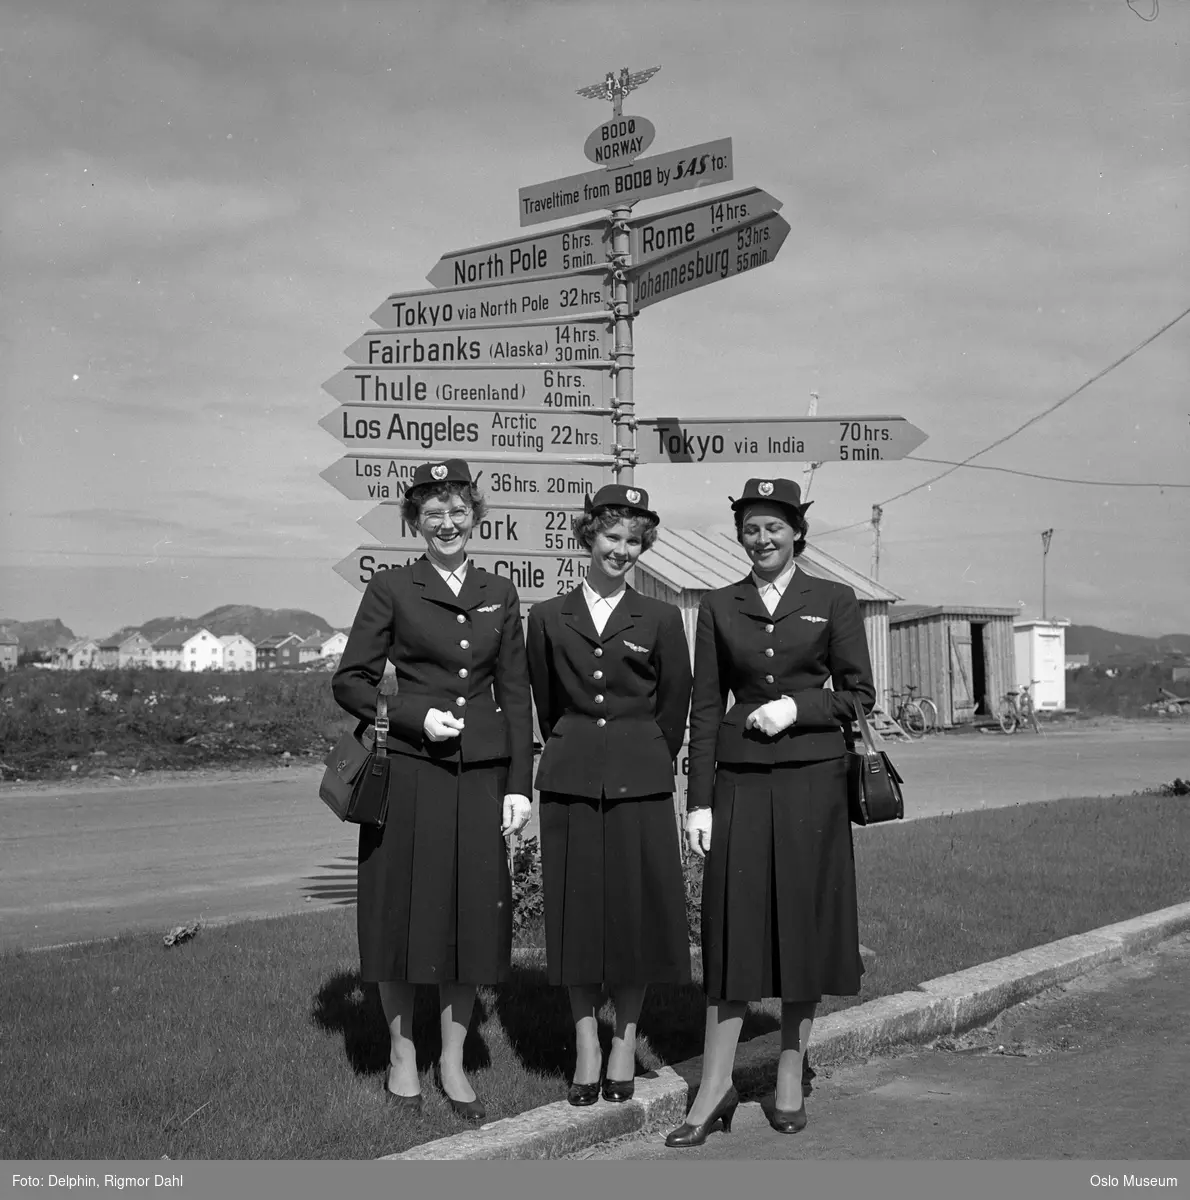 Bodø lufthavn, kvinner, flyvertinner, uniformer, skilt